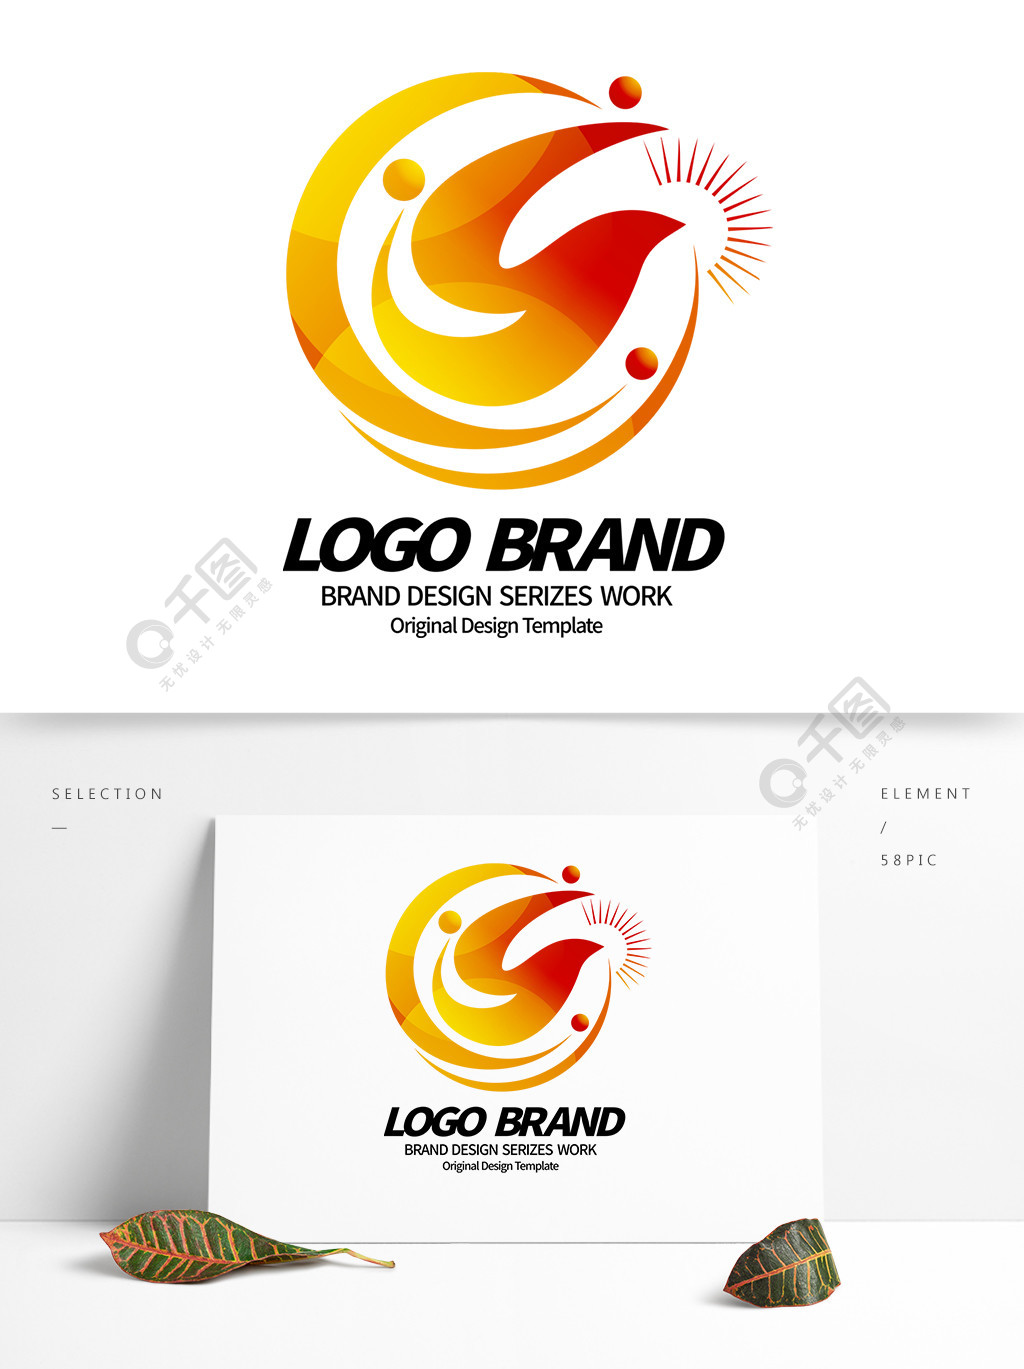 首页 平面广告 logo/标识 logo 设计 > 当前作品